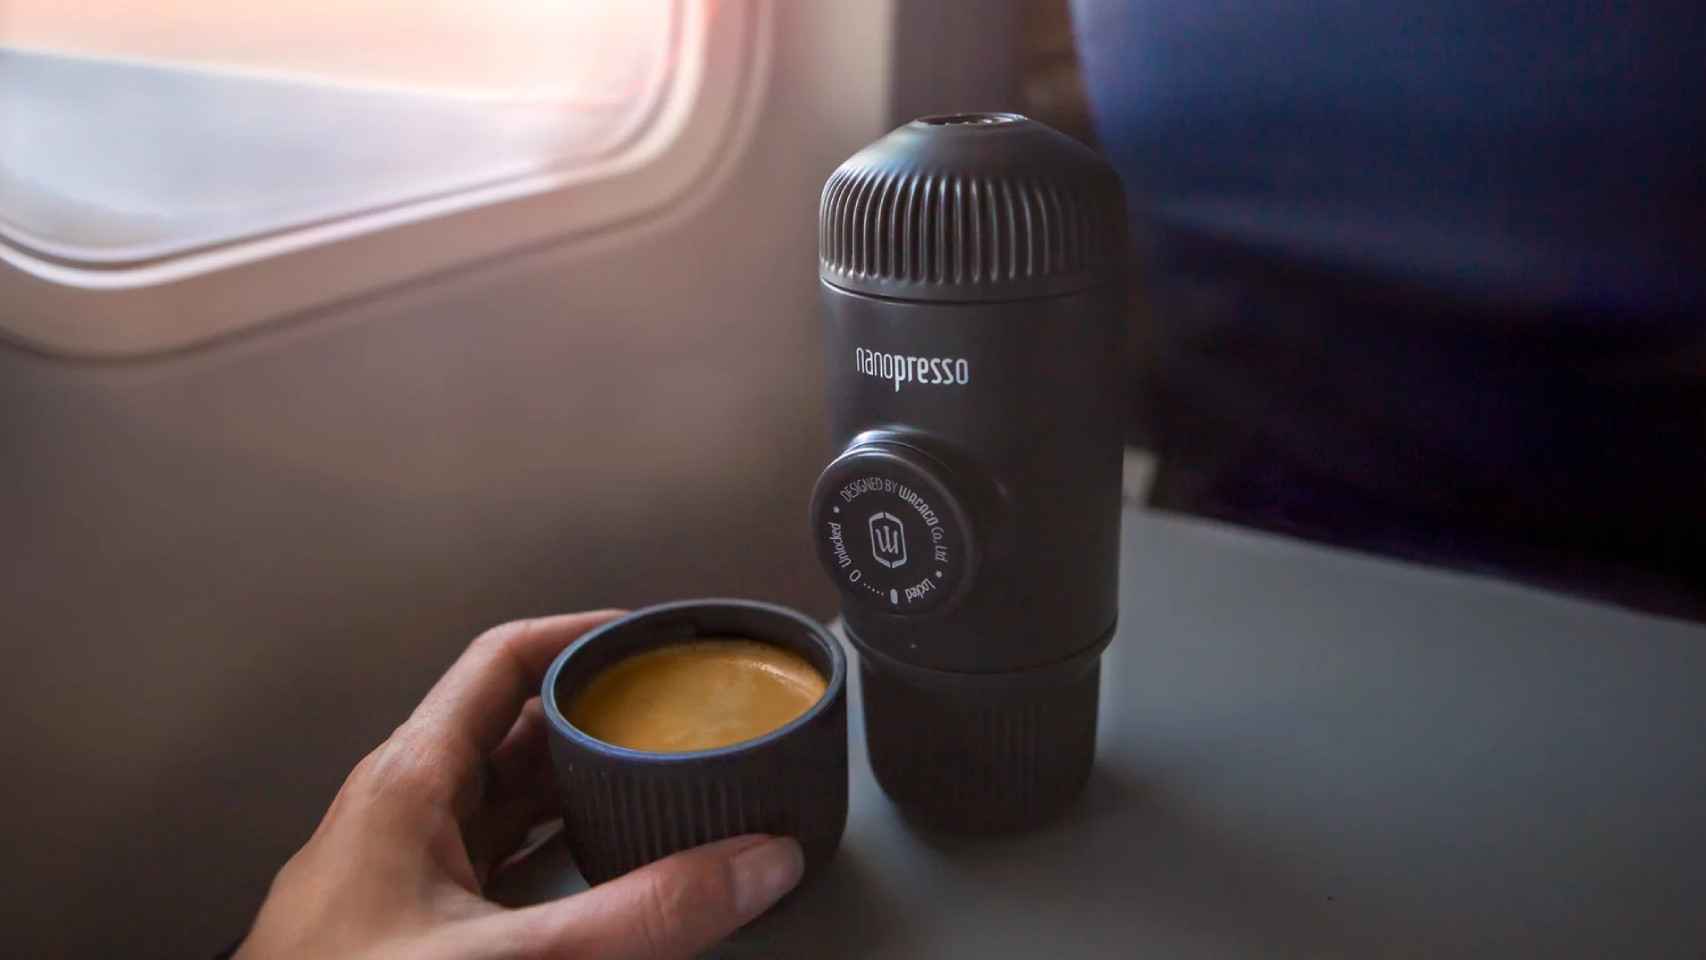 Las cápsulas Nespresso en todas partes con esta ingeniosa cafetera